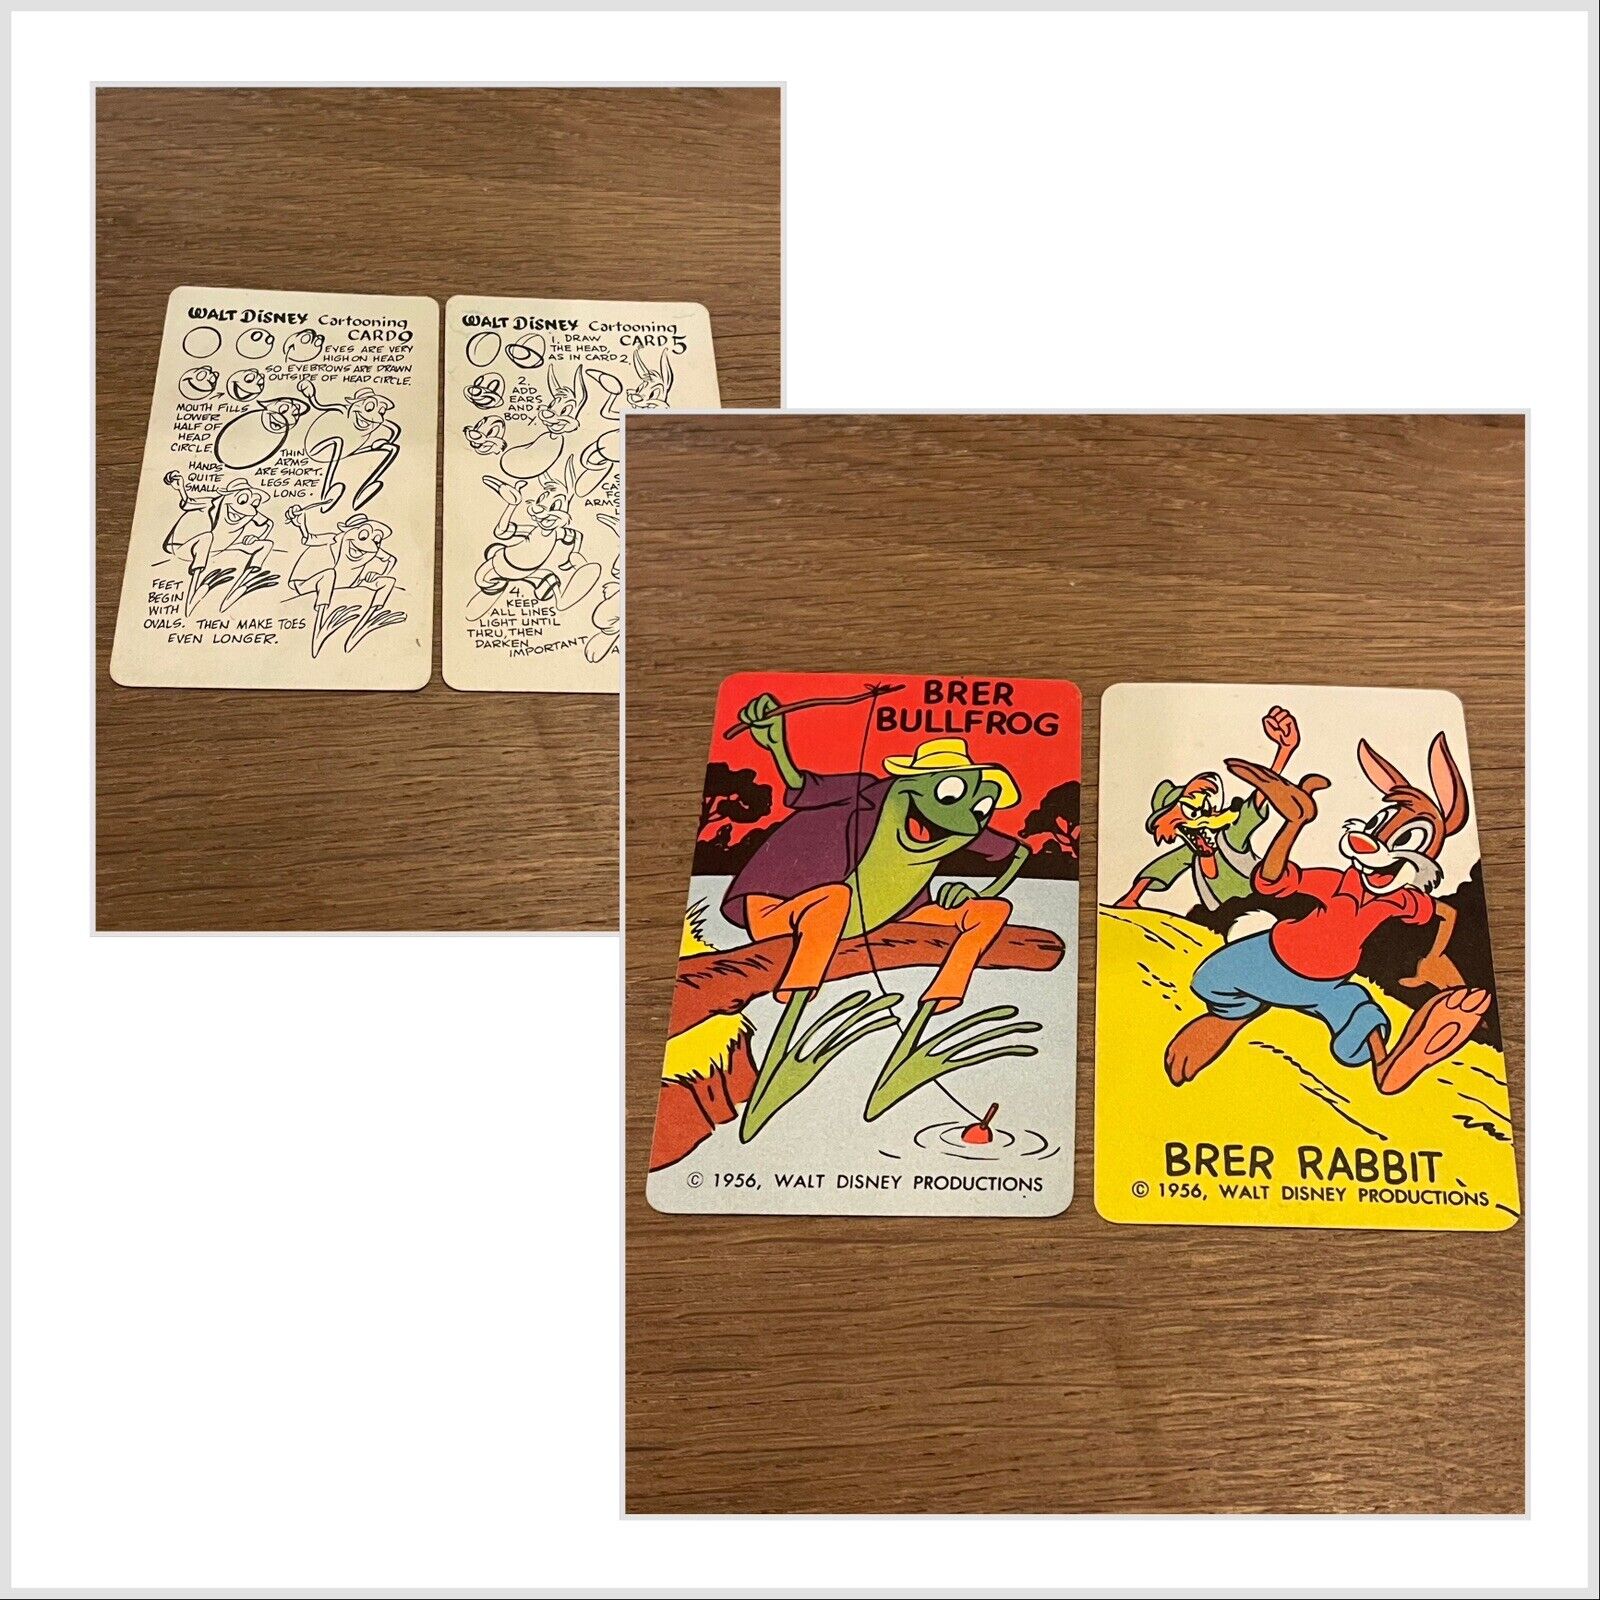 VINTAGE 1956 WALT DISNEY BRER RABBIT & BULLFROG CARTOONING CARDS EXTREMELY RARE